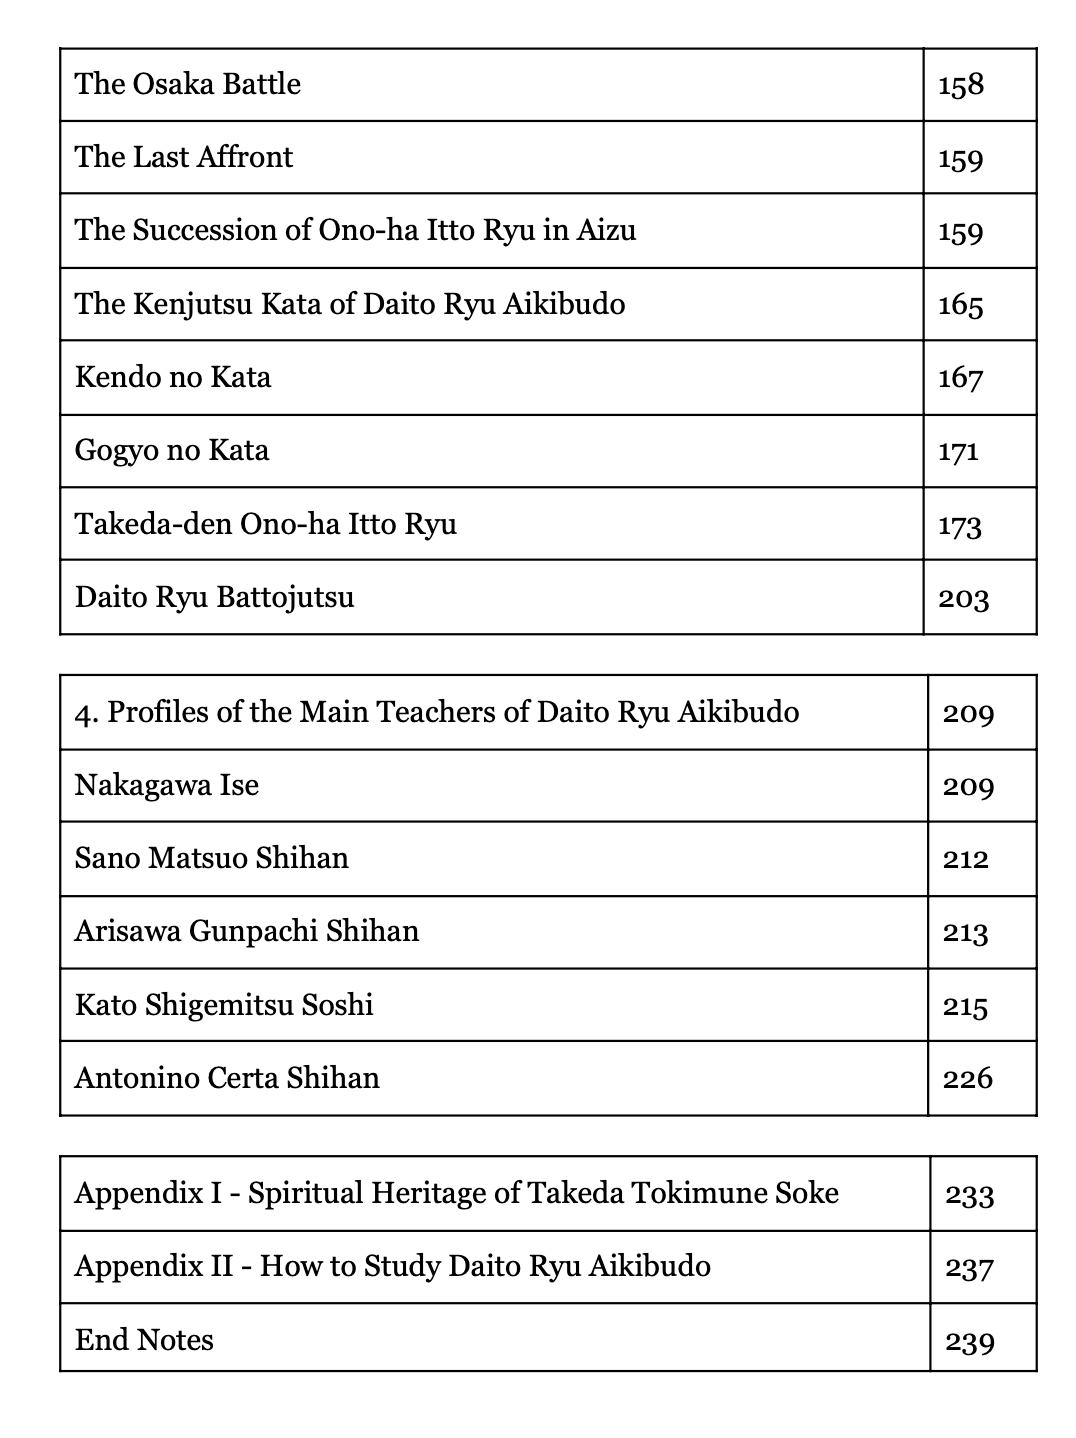 Daito Ryu Aikibudo: History & Technique Book by Antonino Certa (Revised Edition)(E-Book)